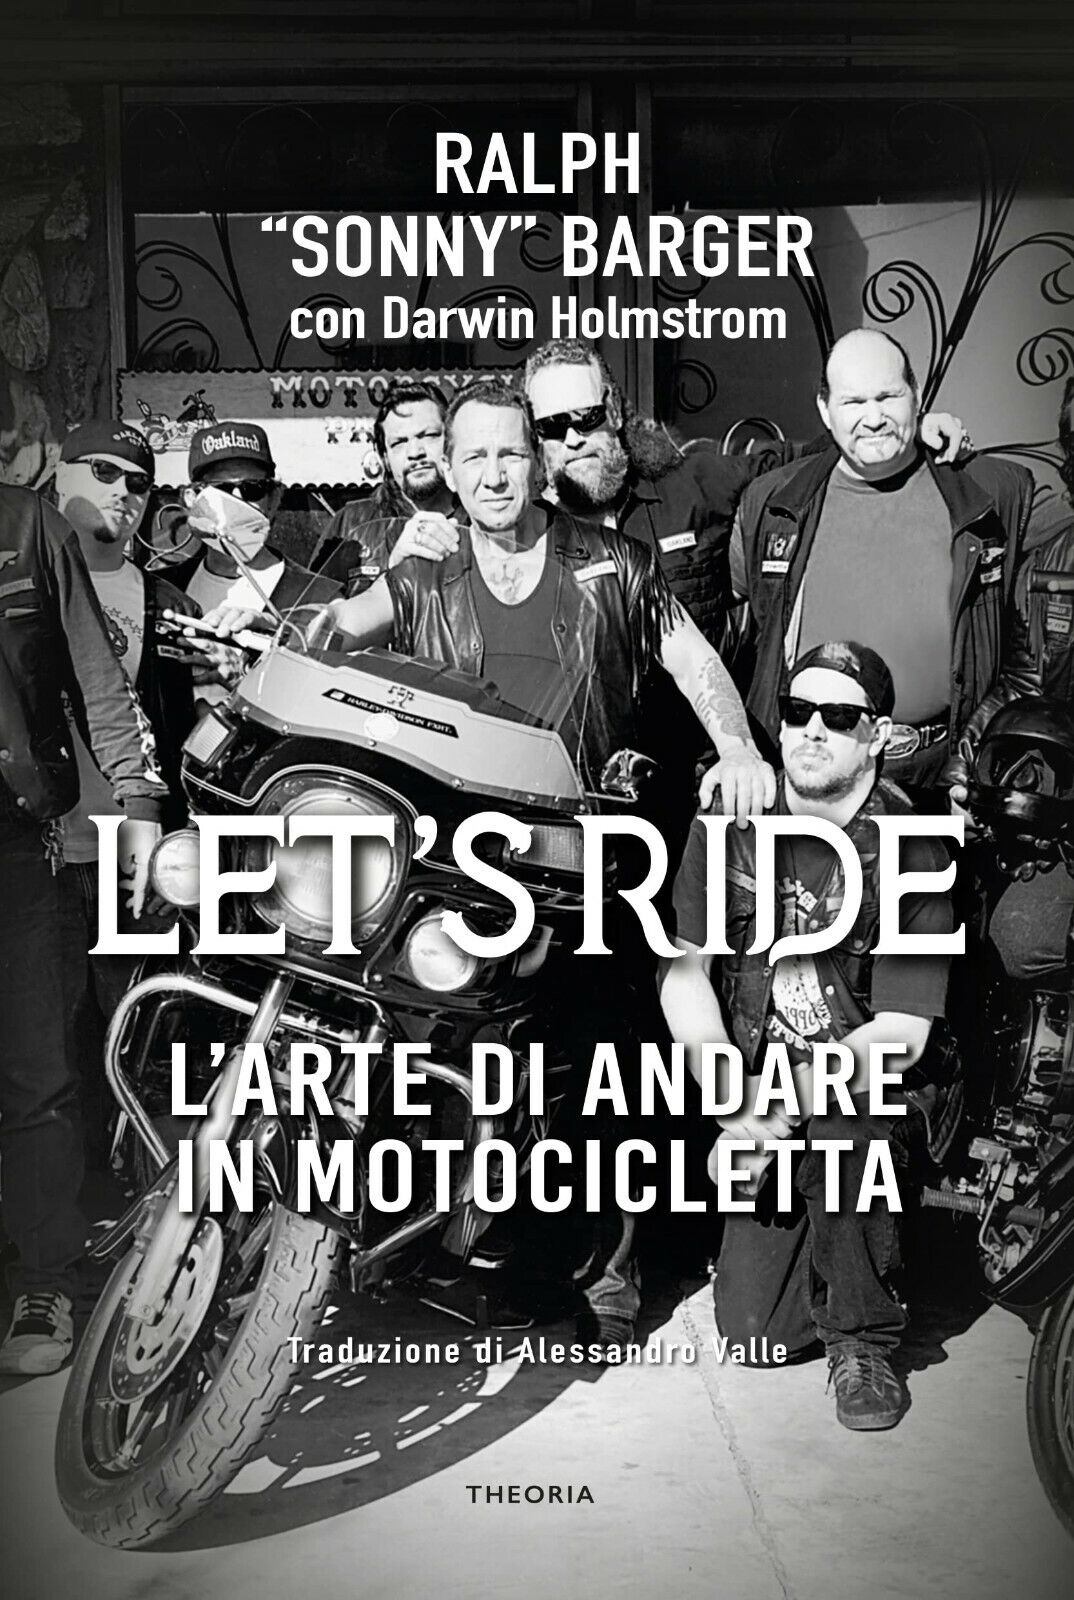 Let's ride: arte di andare in motocicletta-Ralph Barger, Darwin Holmstrom - 2022 libro usato